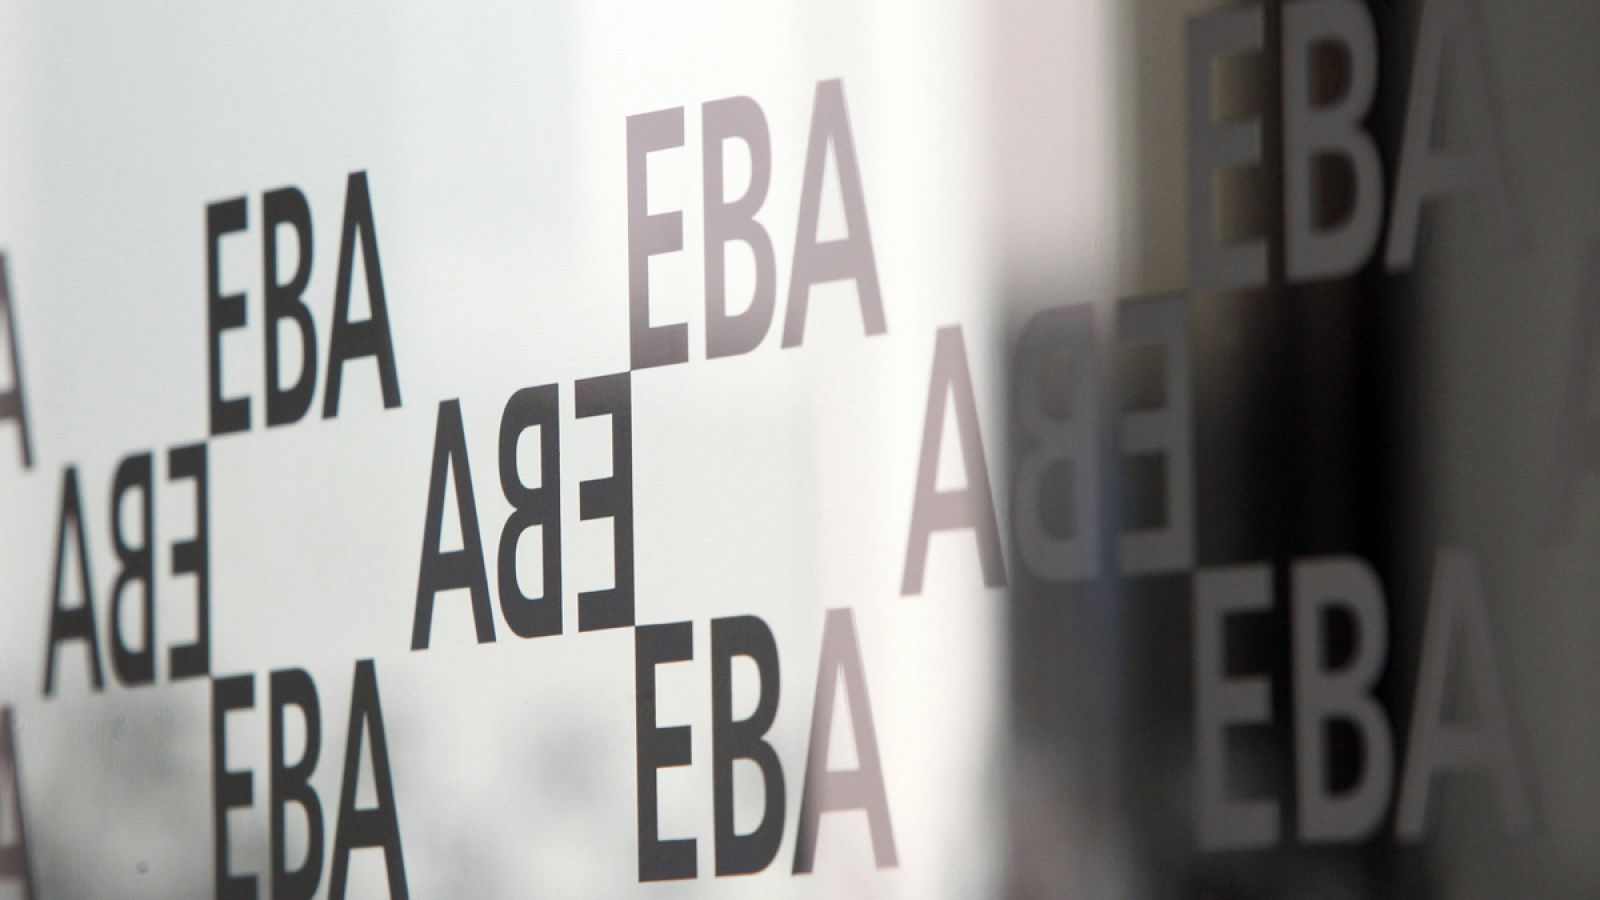 Imagen tomada en la sede de la EBA en Londres